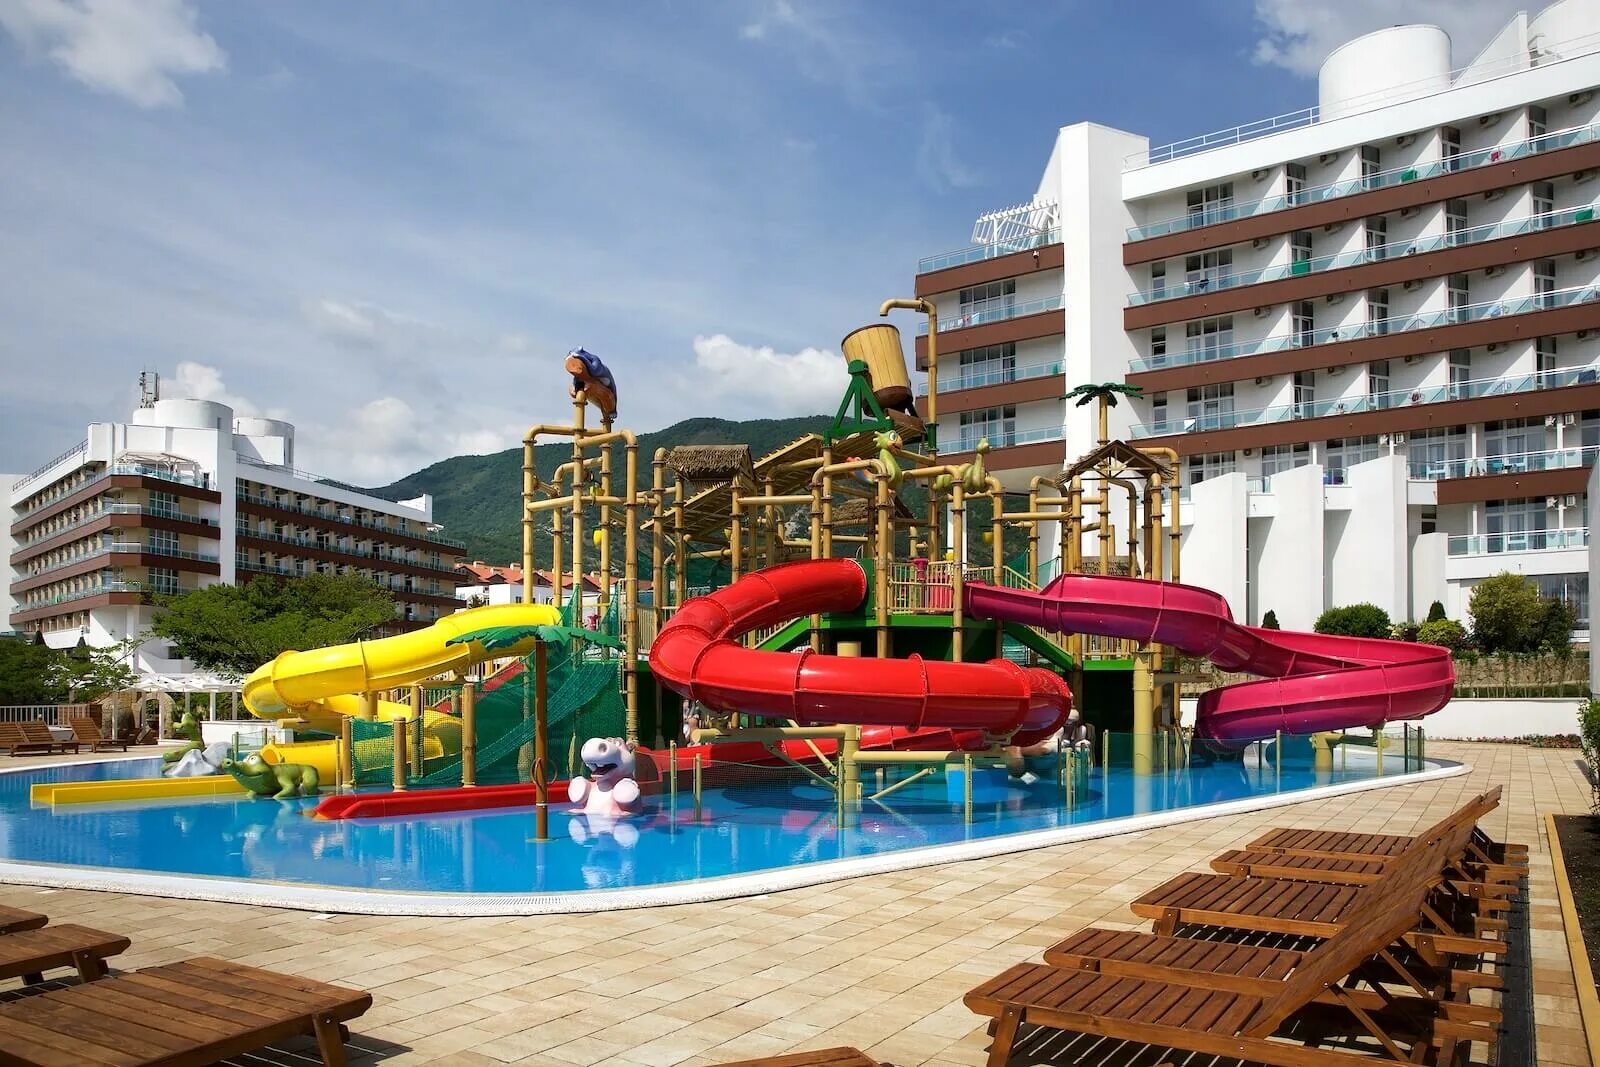 Отель Alean Family Resort Spa Biarritz. Алиана сочи отель